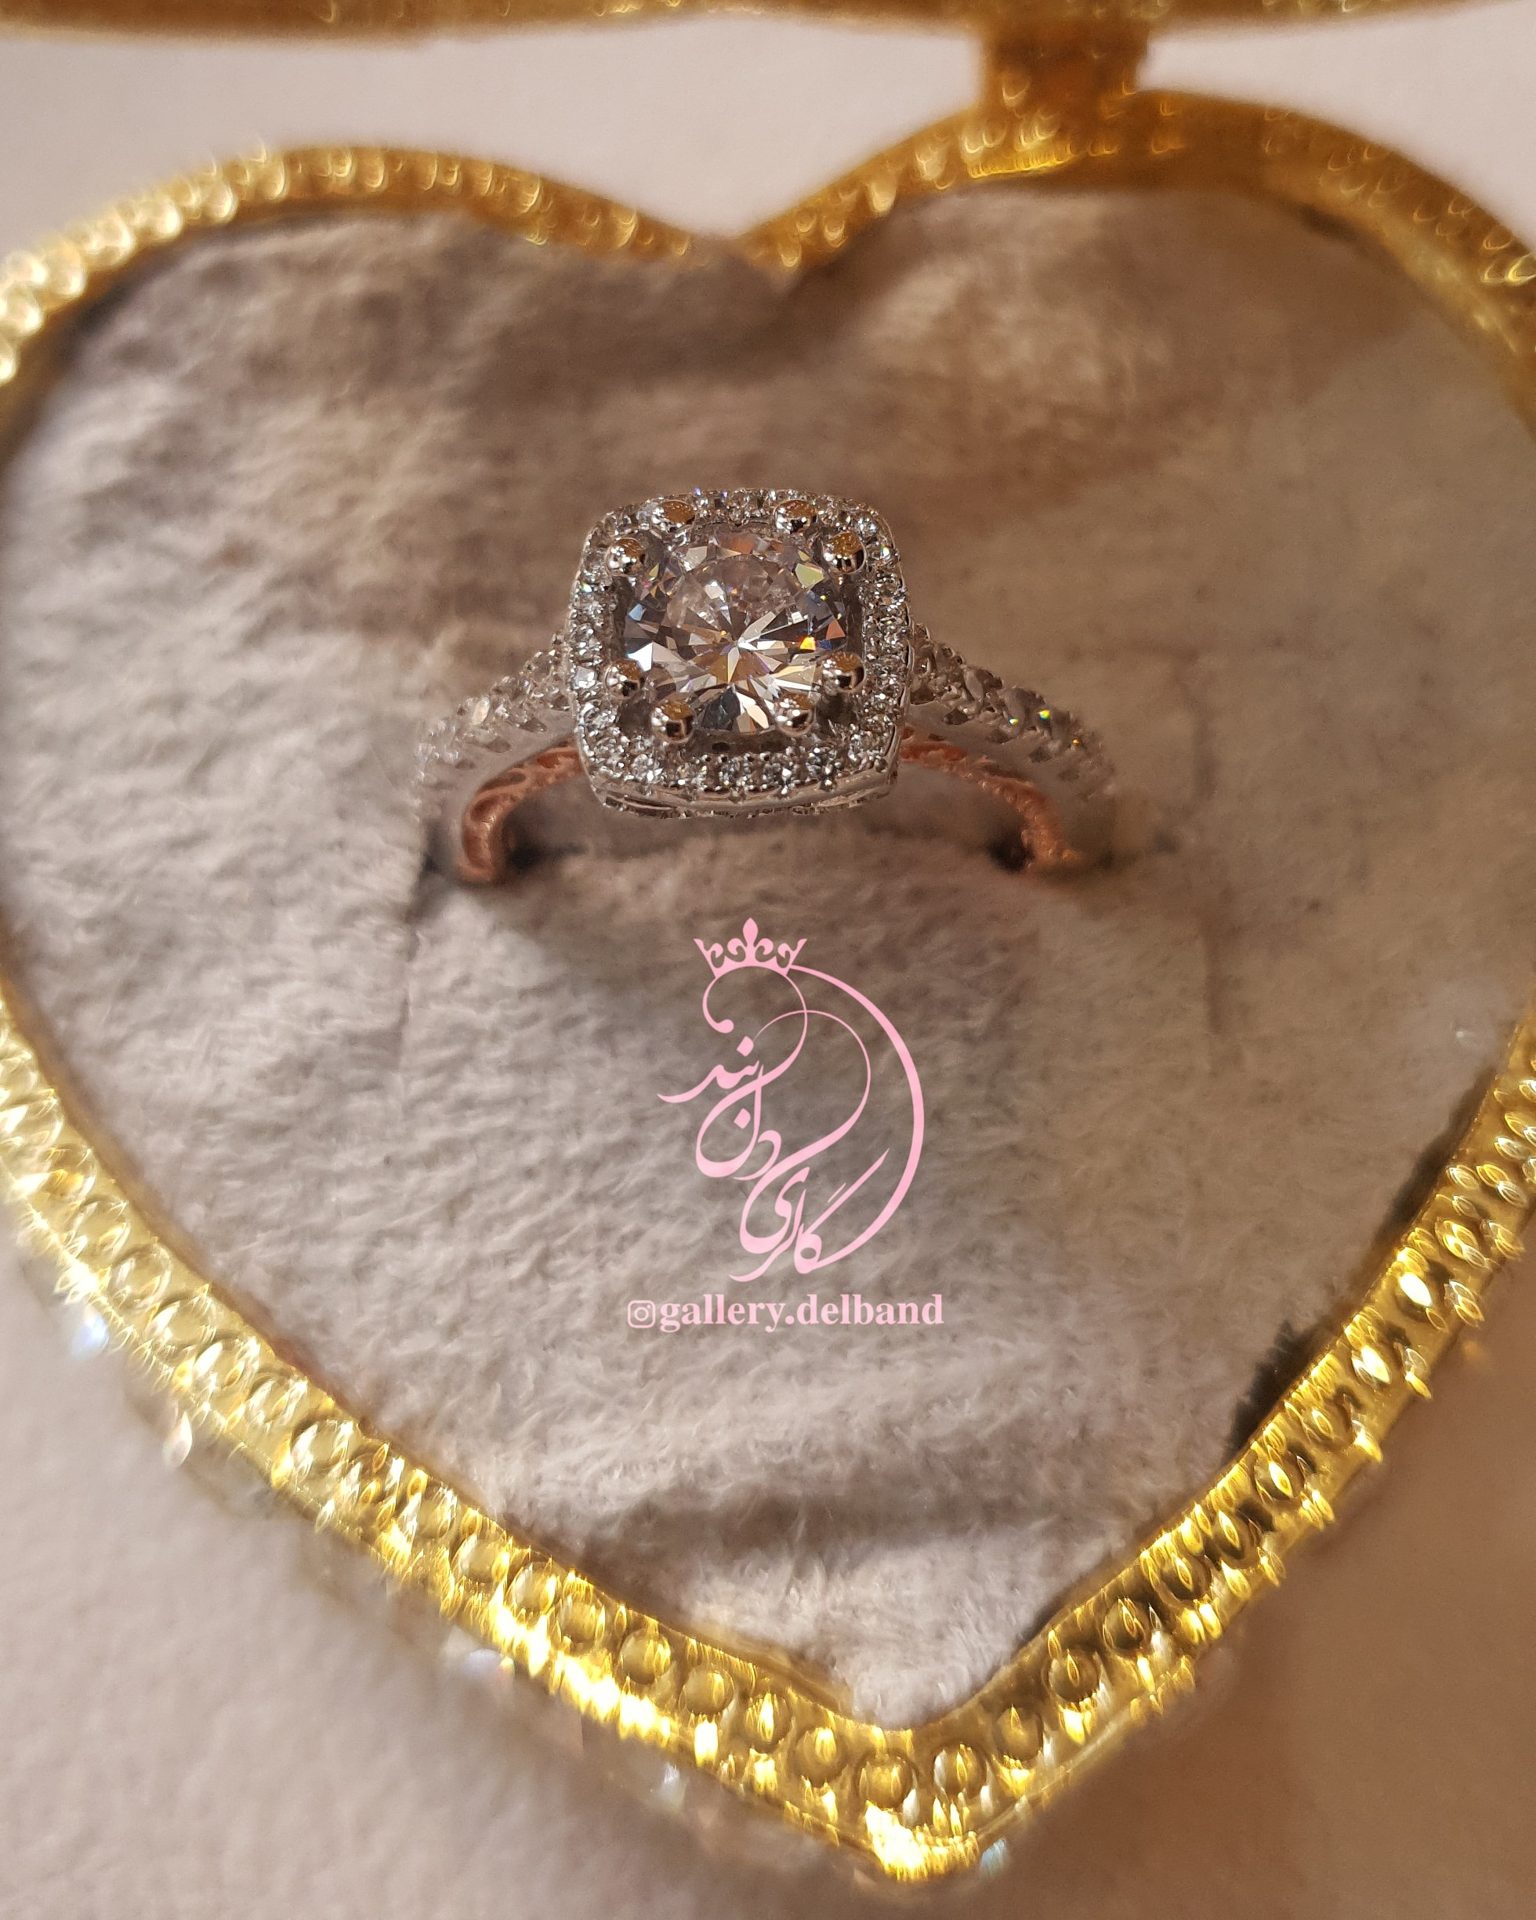 💍انگشتر جواهری با طراحی خاص و زیبا نقره عیار ۹۲۵ با روکش طلا سفید‌‌‌‌‌‌‌ ‌‌و داخل رکاب رزگلد	